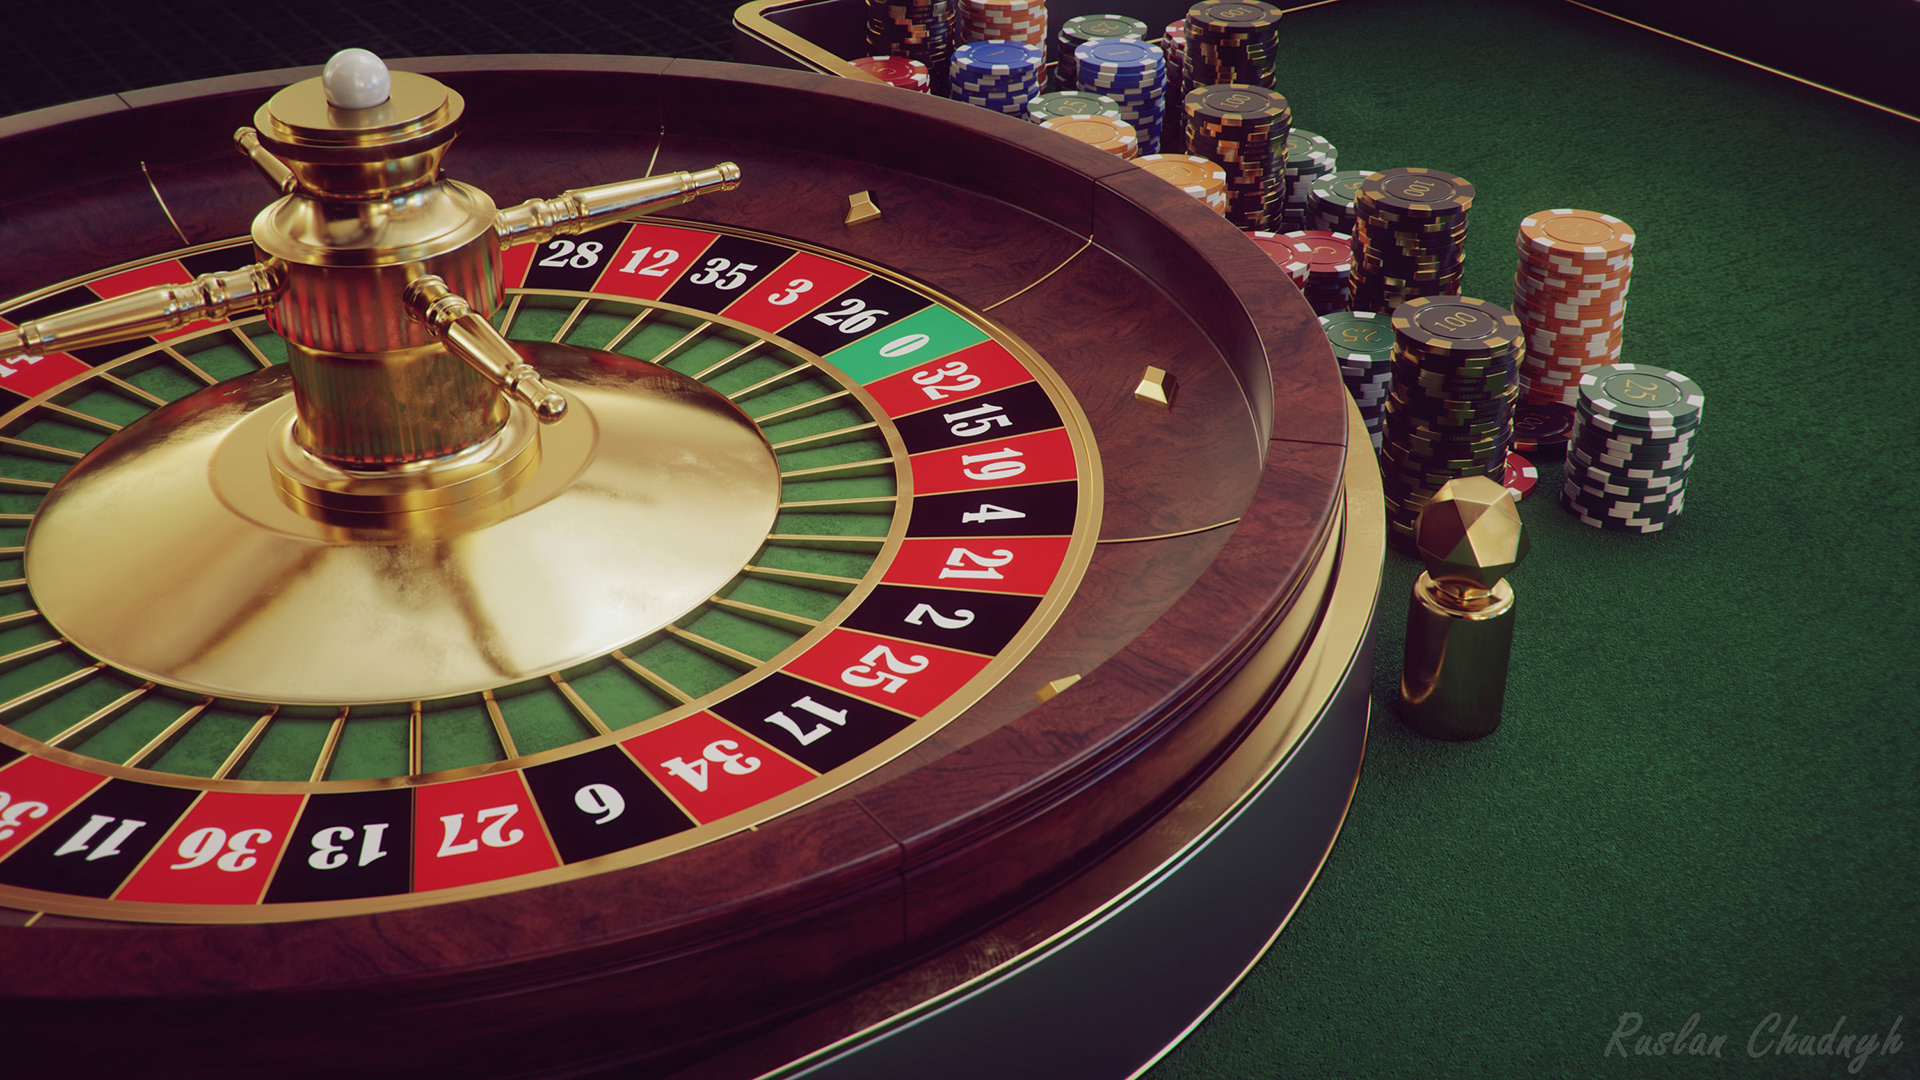 Slotico casino online training гослото 6 из 45 как выиграть джекпот